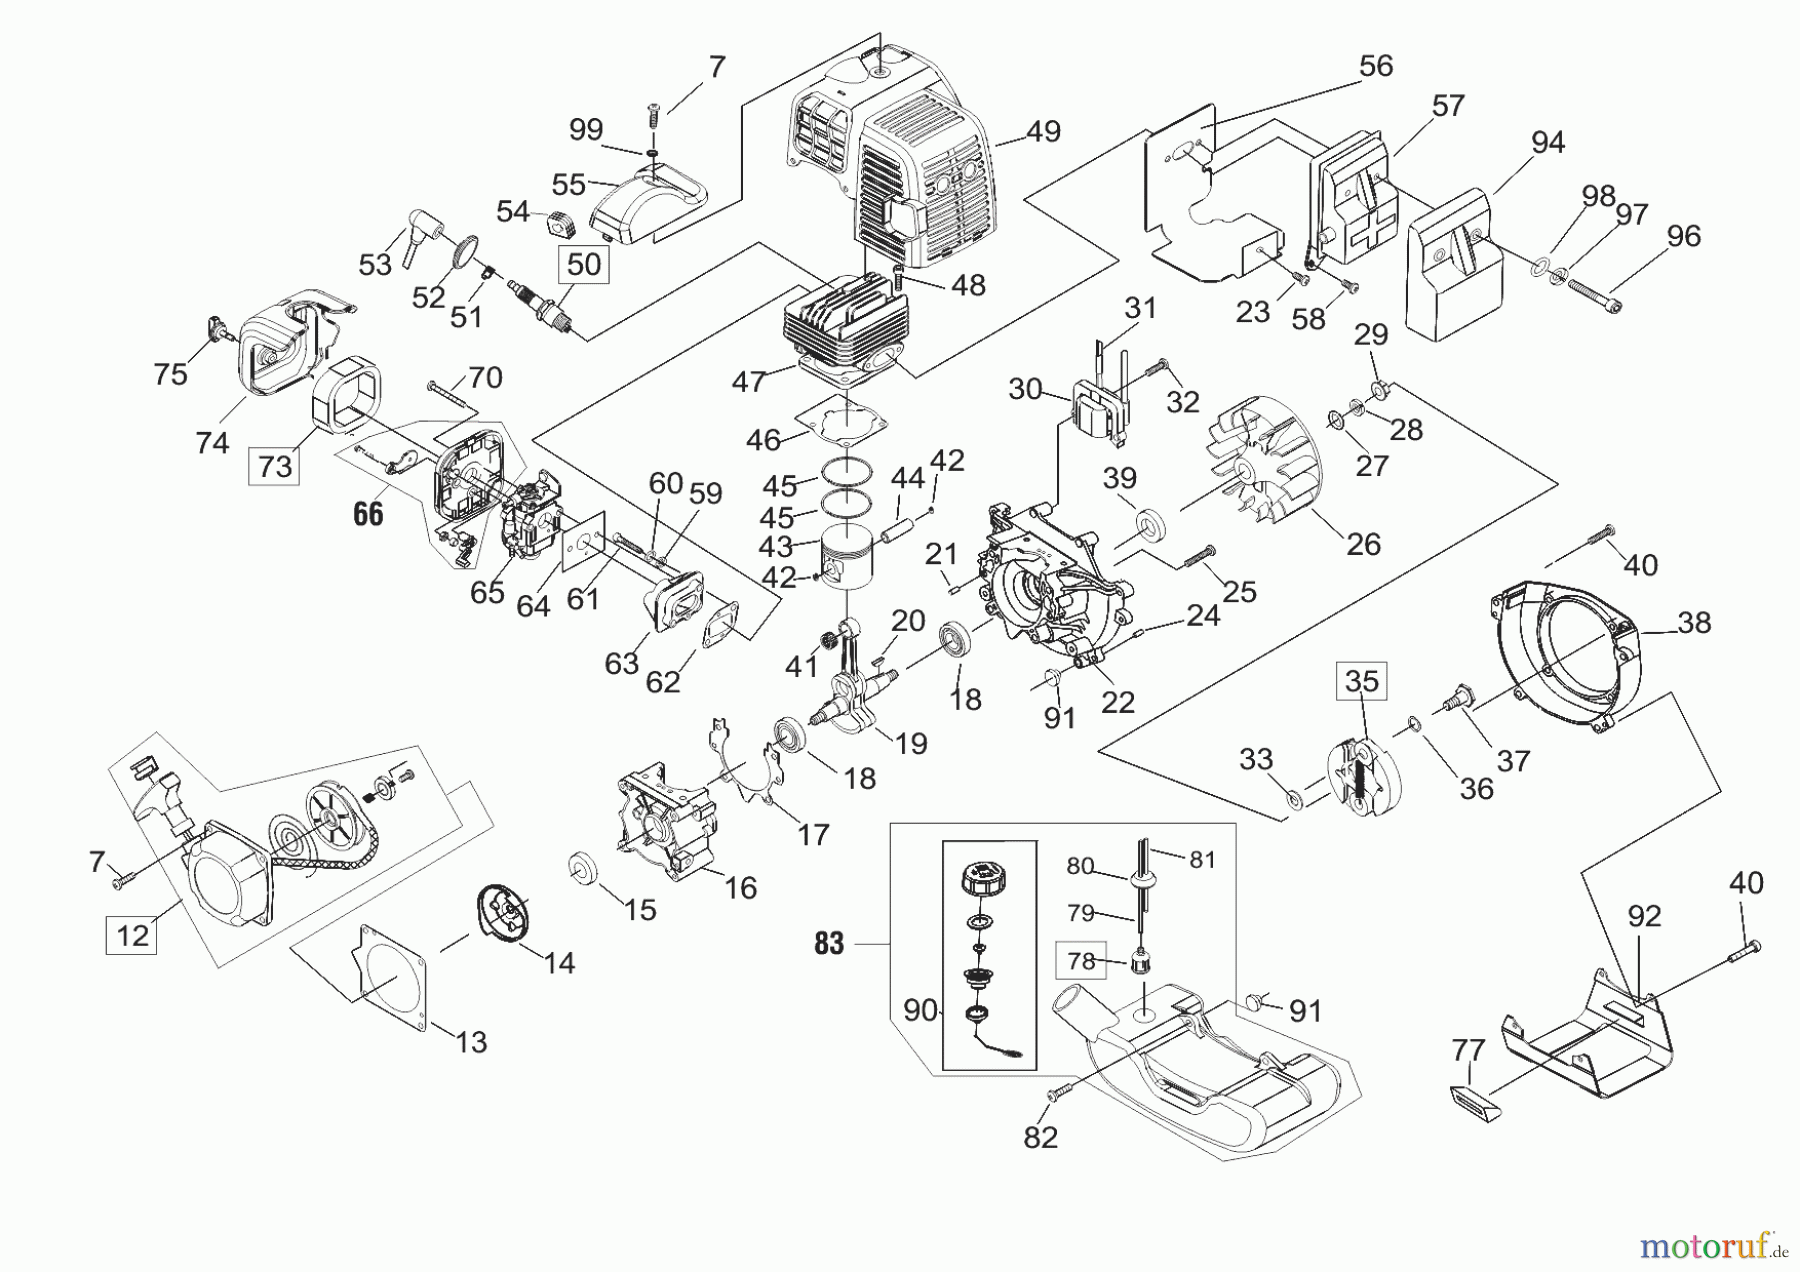  AL-KO Gartentechnik Motorsensen GT 430DL   01/2017 Seite 2